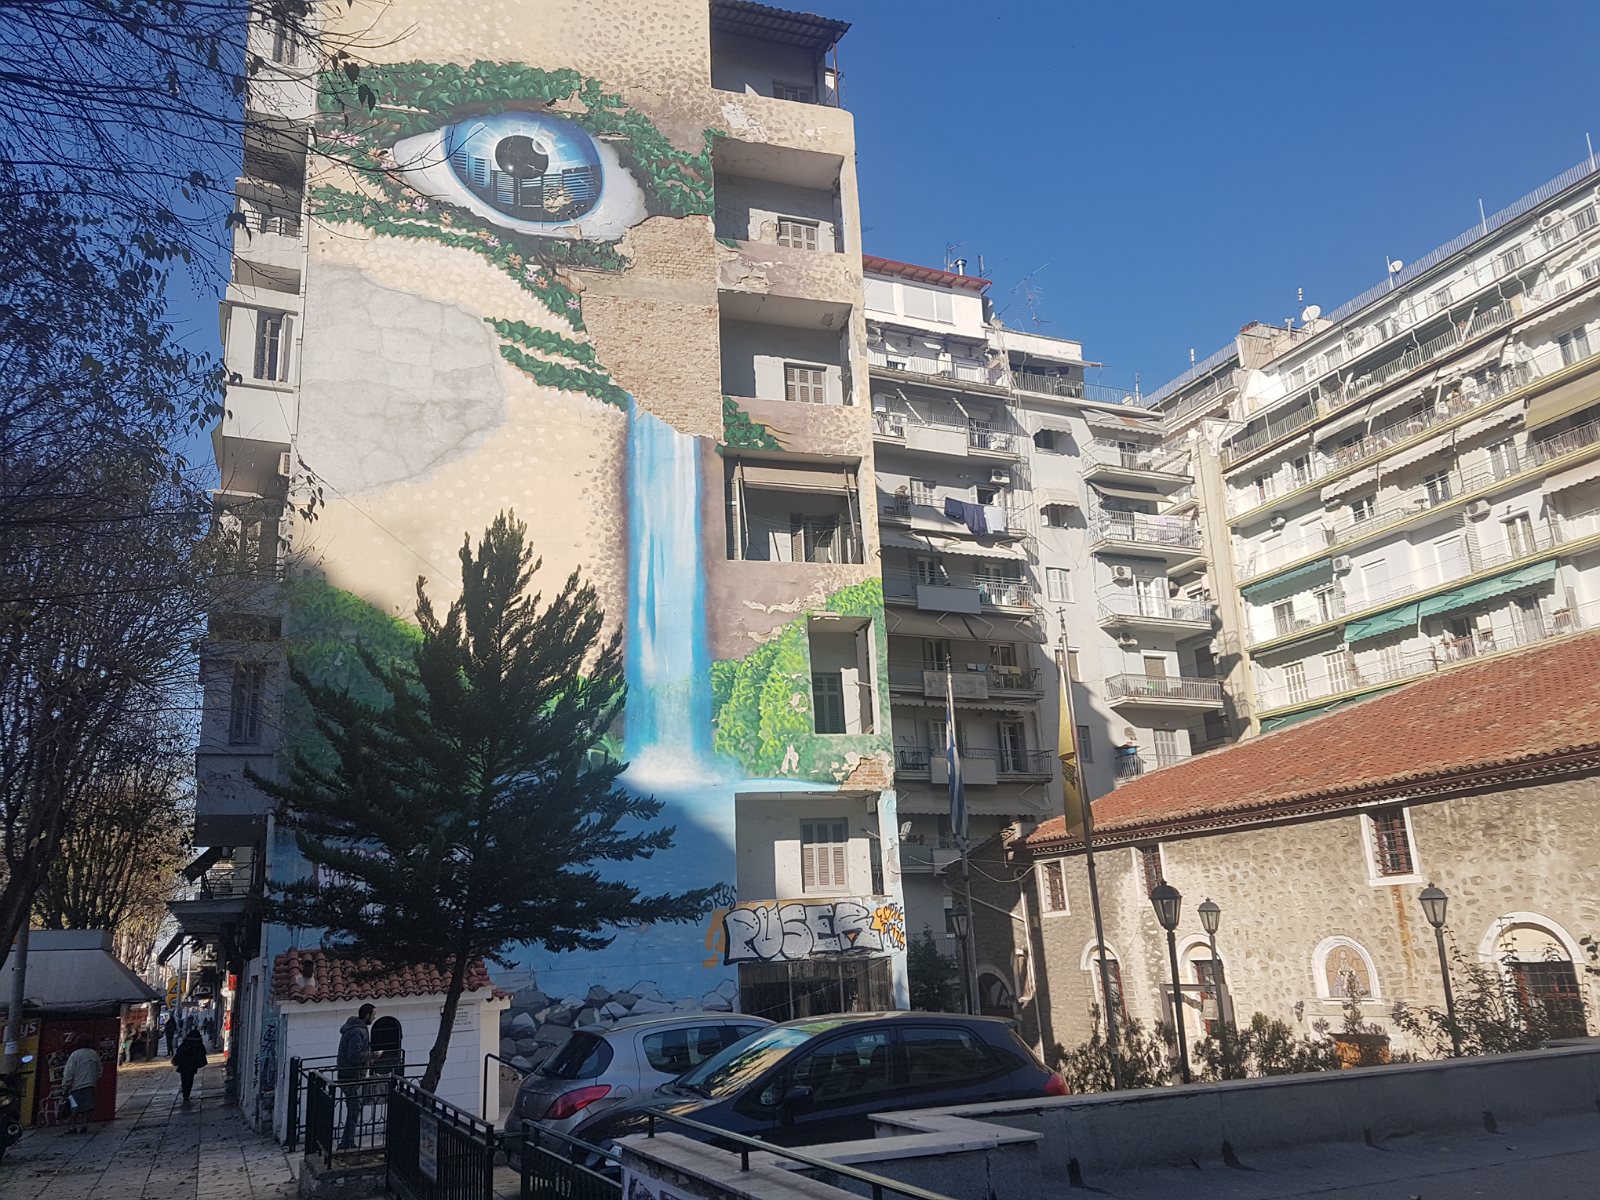 1. Mural w mieście Saloniki.